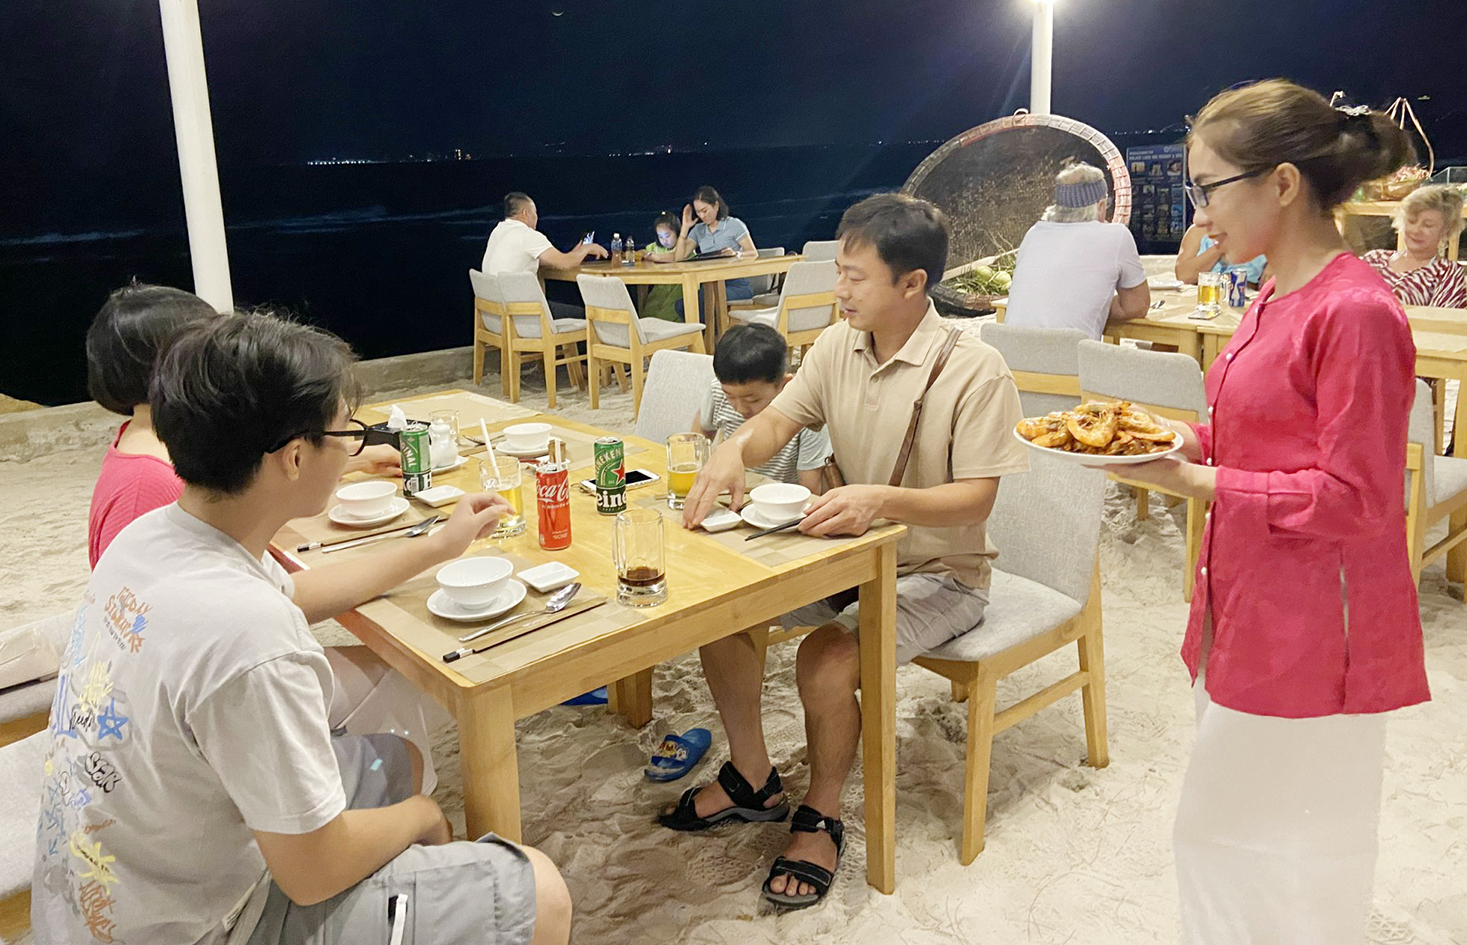 Palace Long Hải Resort mở tiệc hải sản bên bãi biển phục vụ khách lưu trú.